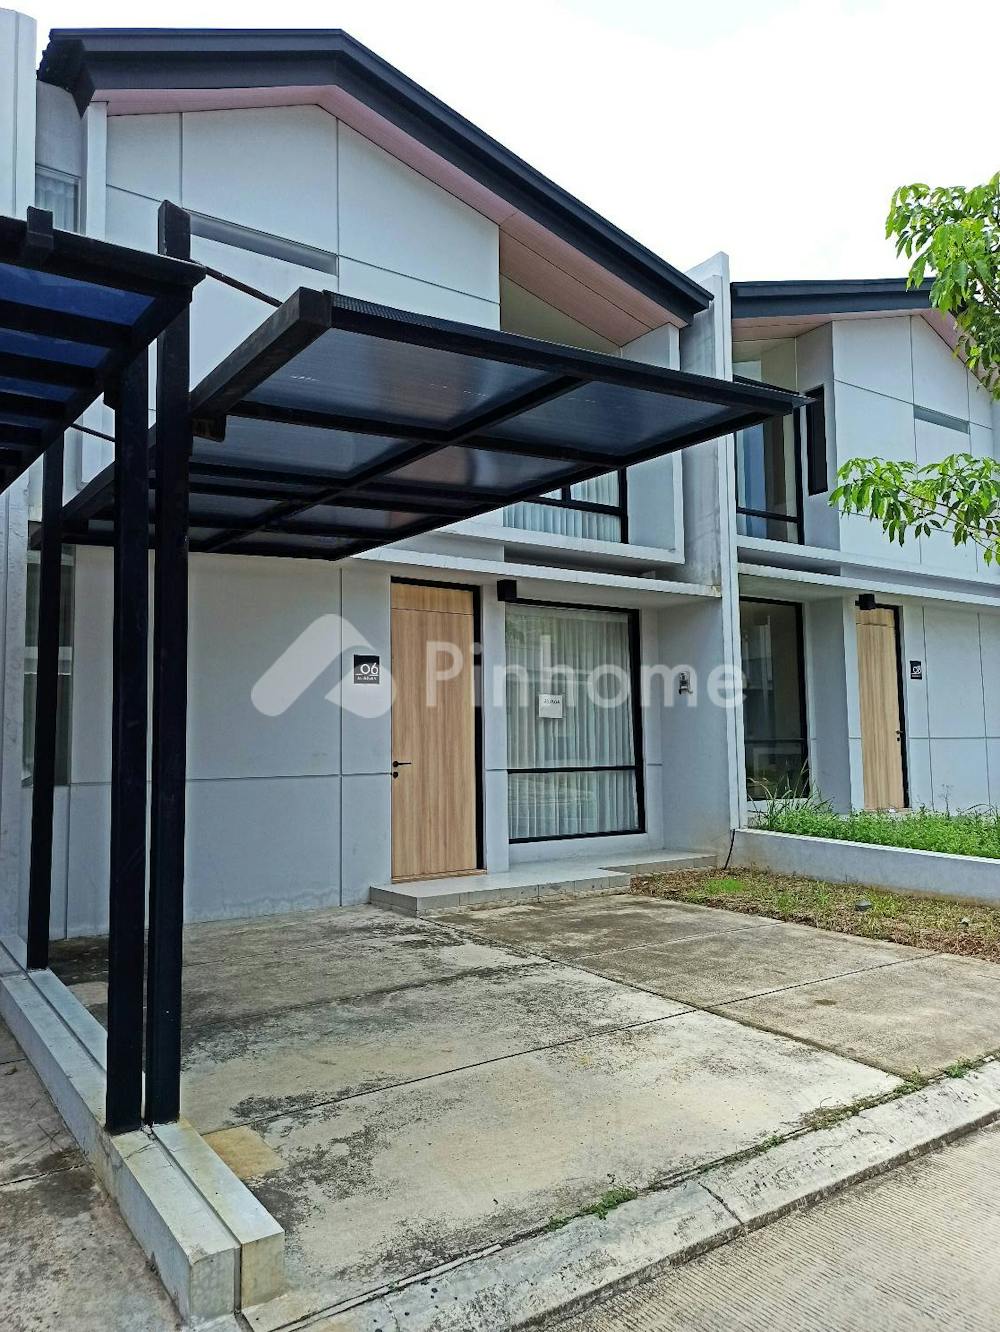 Disewakan Rumah Rolling Hills Karawang Tipe 3 di Jl. Arteri KIIC Rp55 Juta/tahun | Pinhome